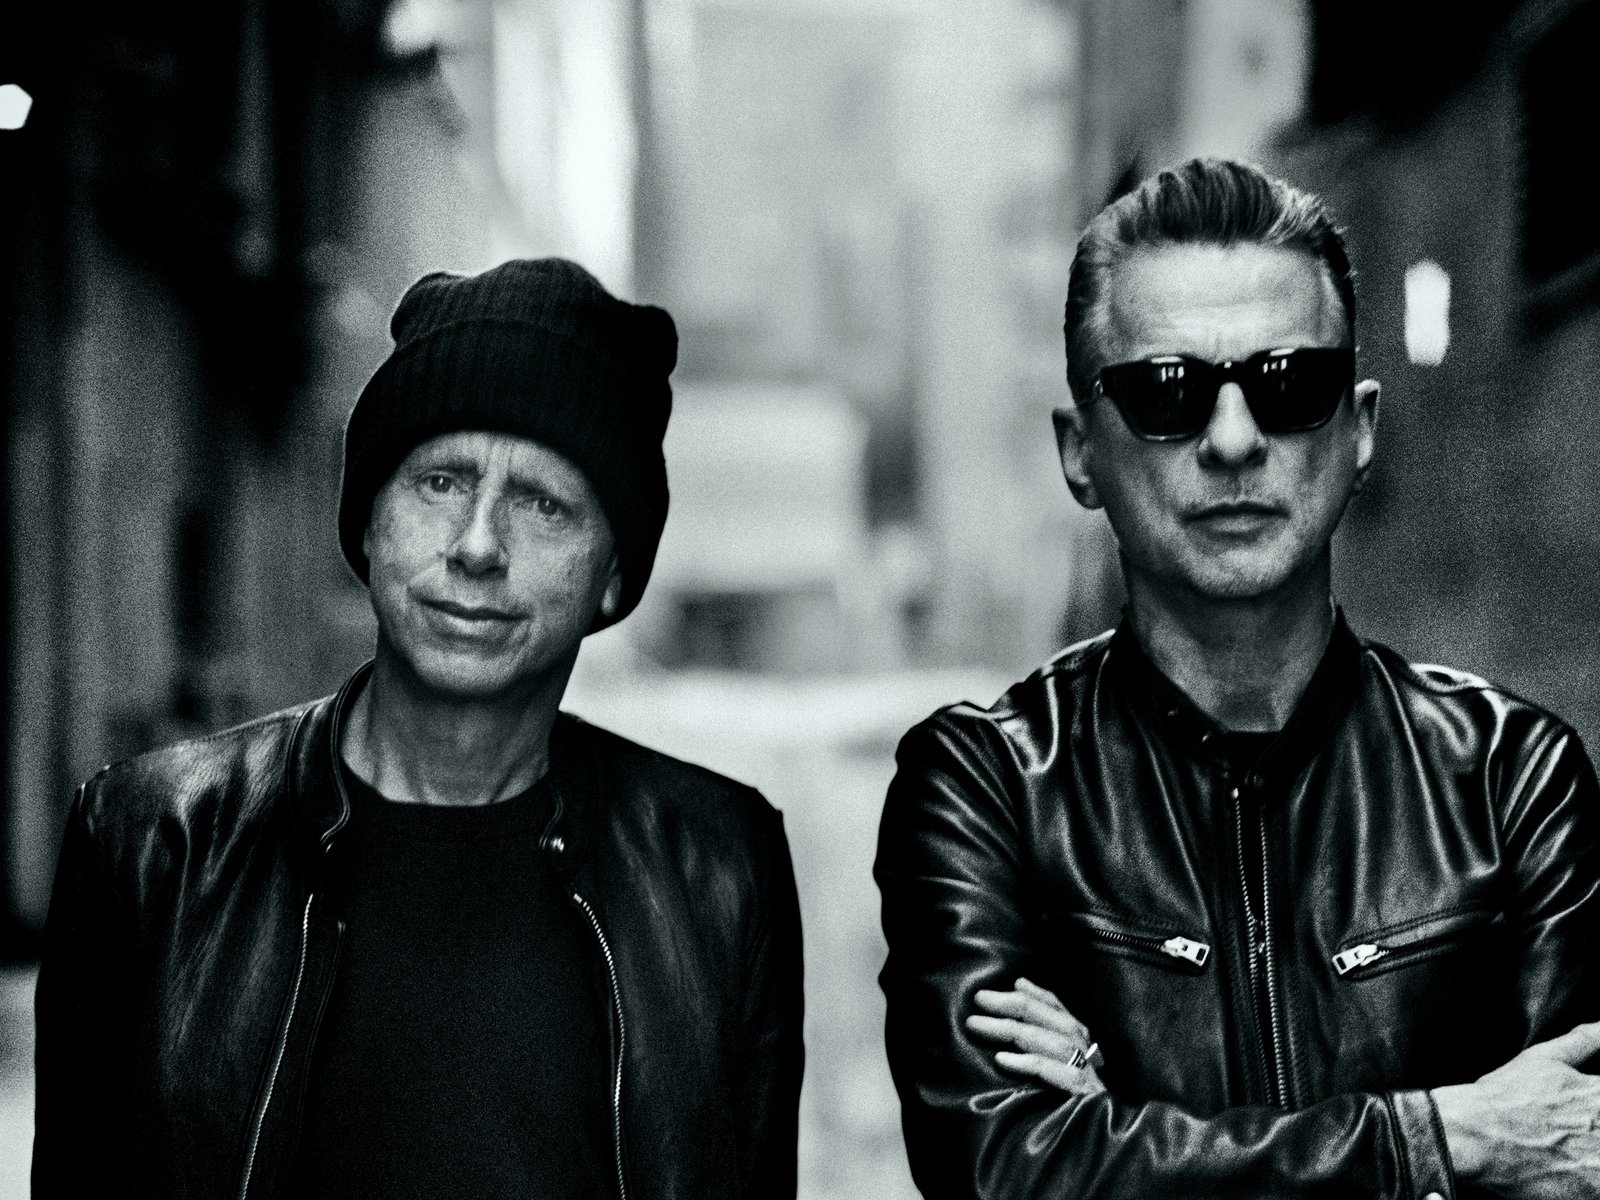 Depeche Mode as a Christian